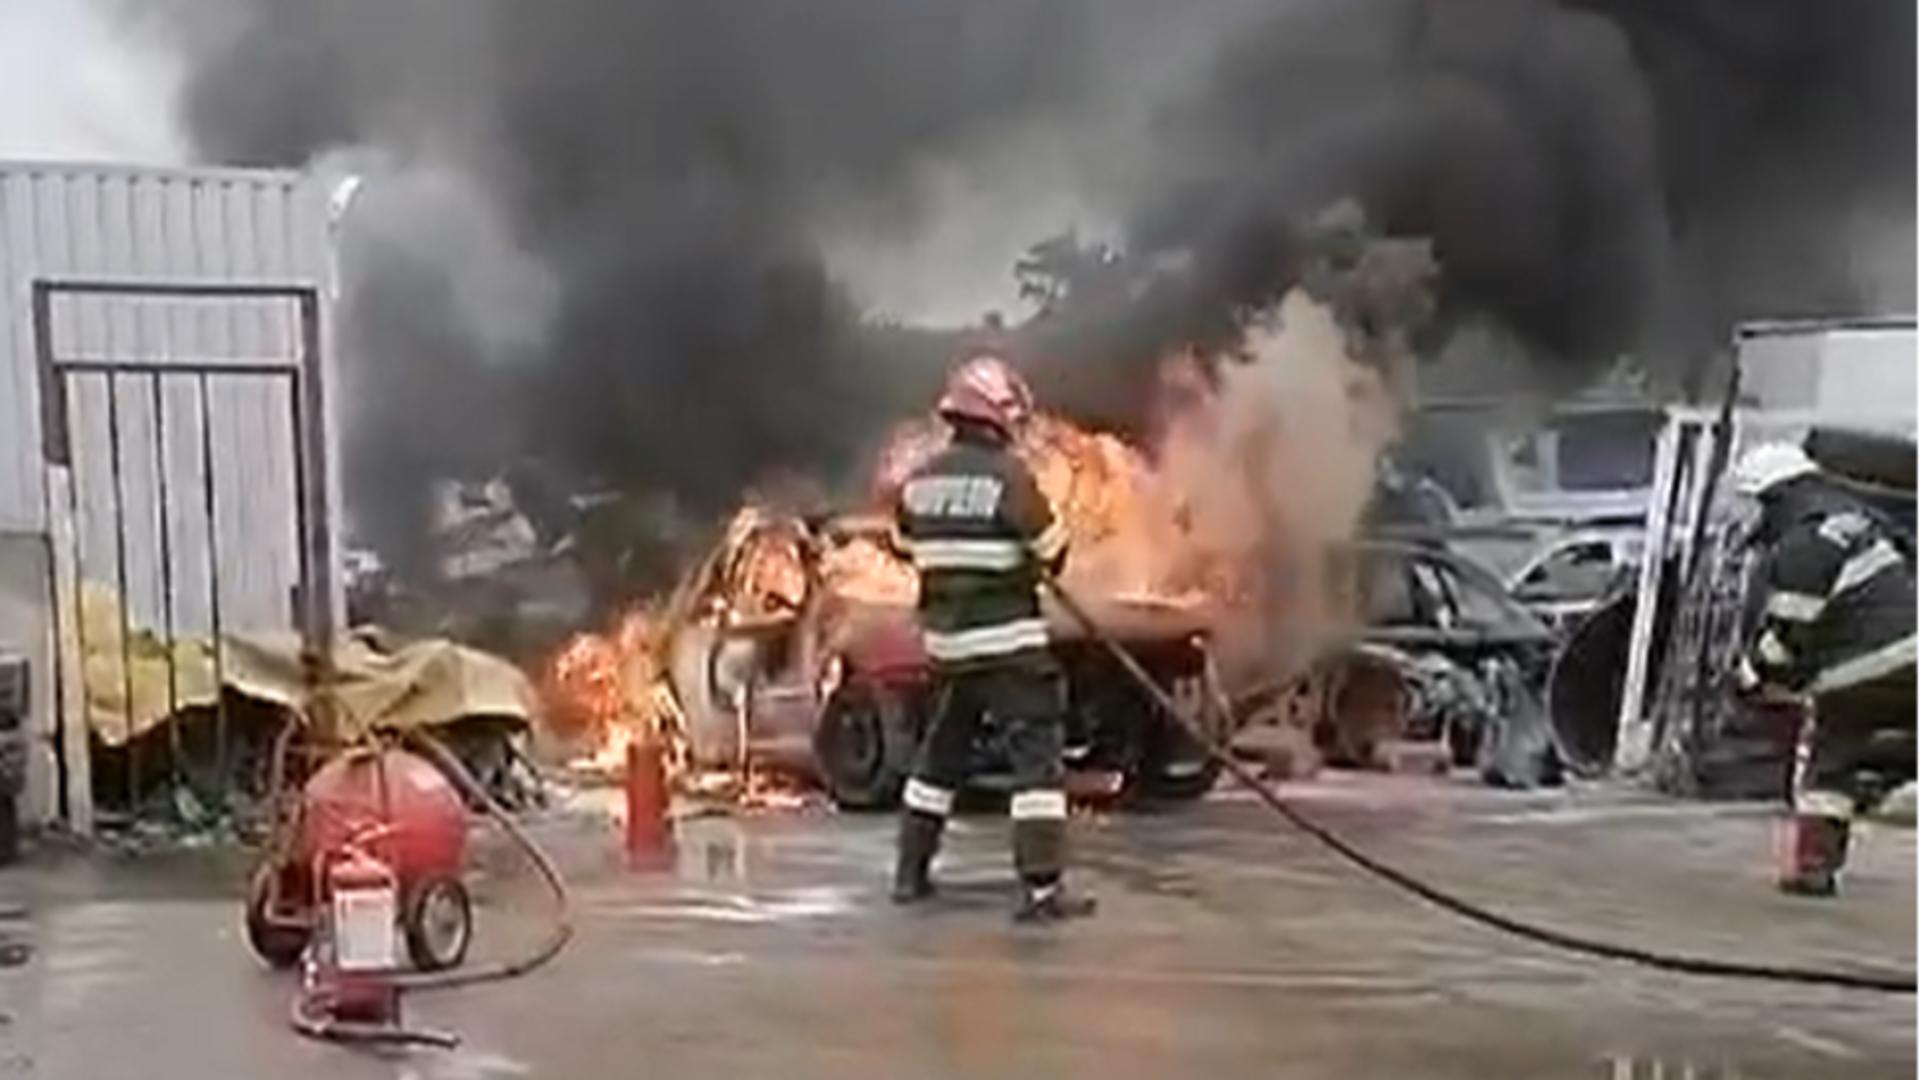 Maşină mistuită de flăcări în curtea unei societăţi comerciale din Arad. De la ce a pornit incendiul/ Captură video